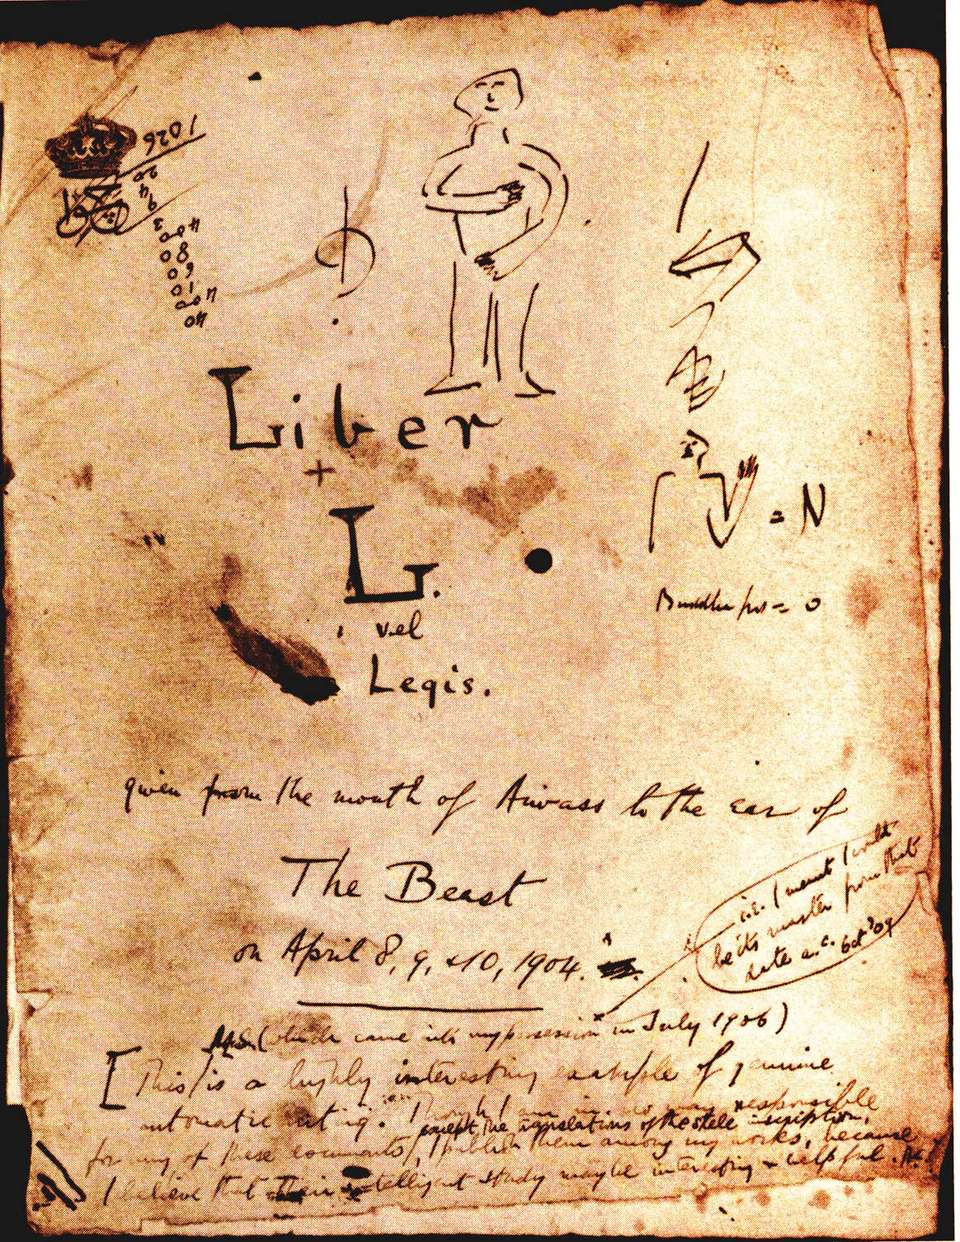 Capa do manuscrito do Livro da Lei